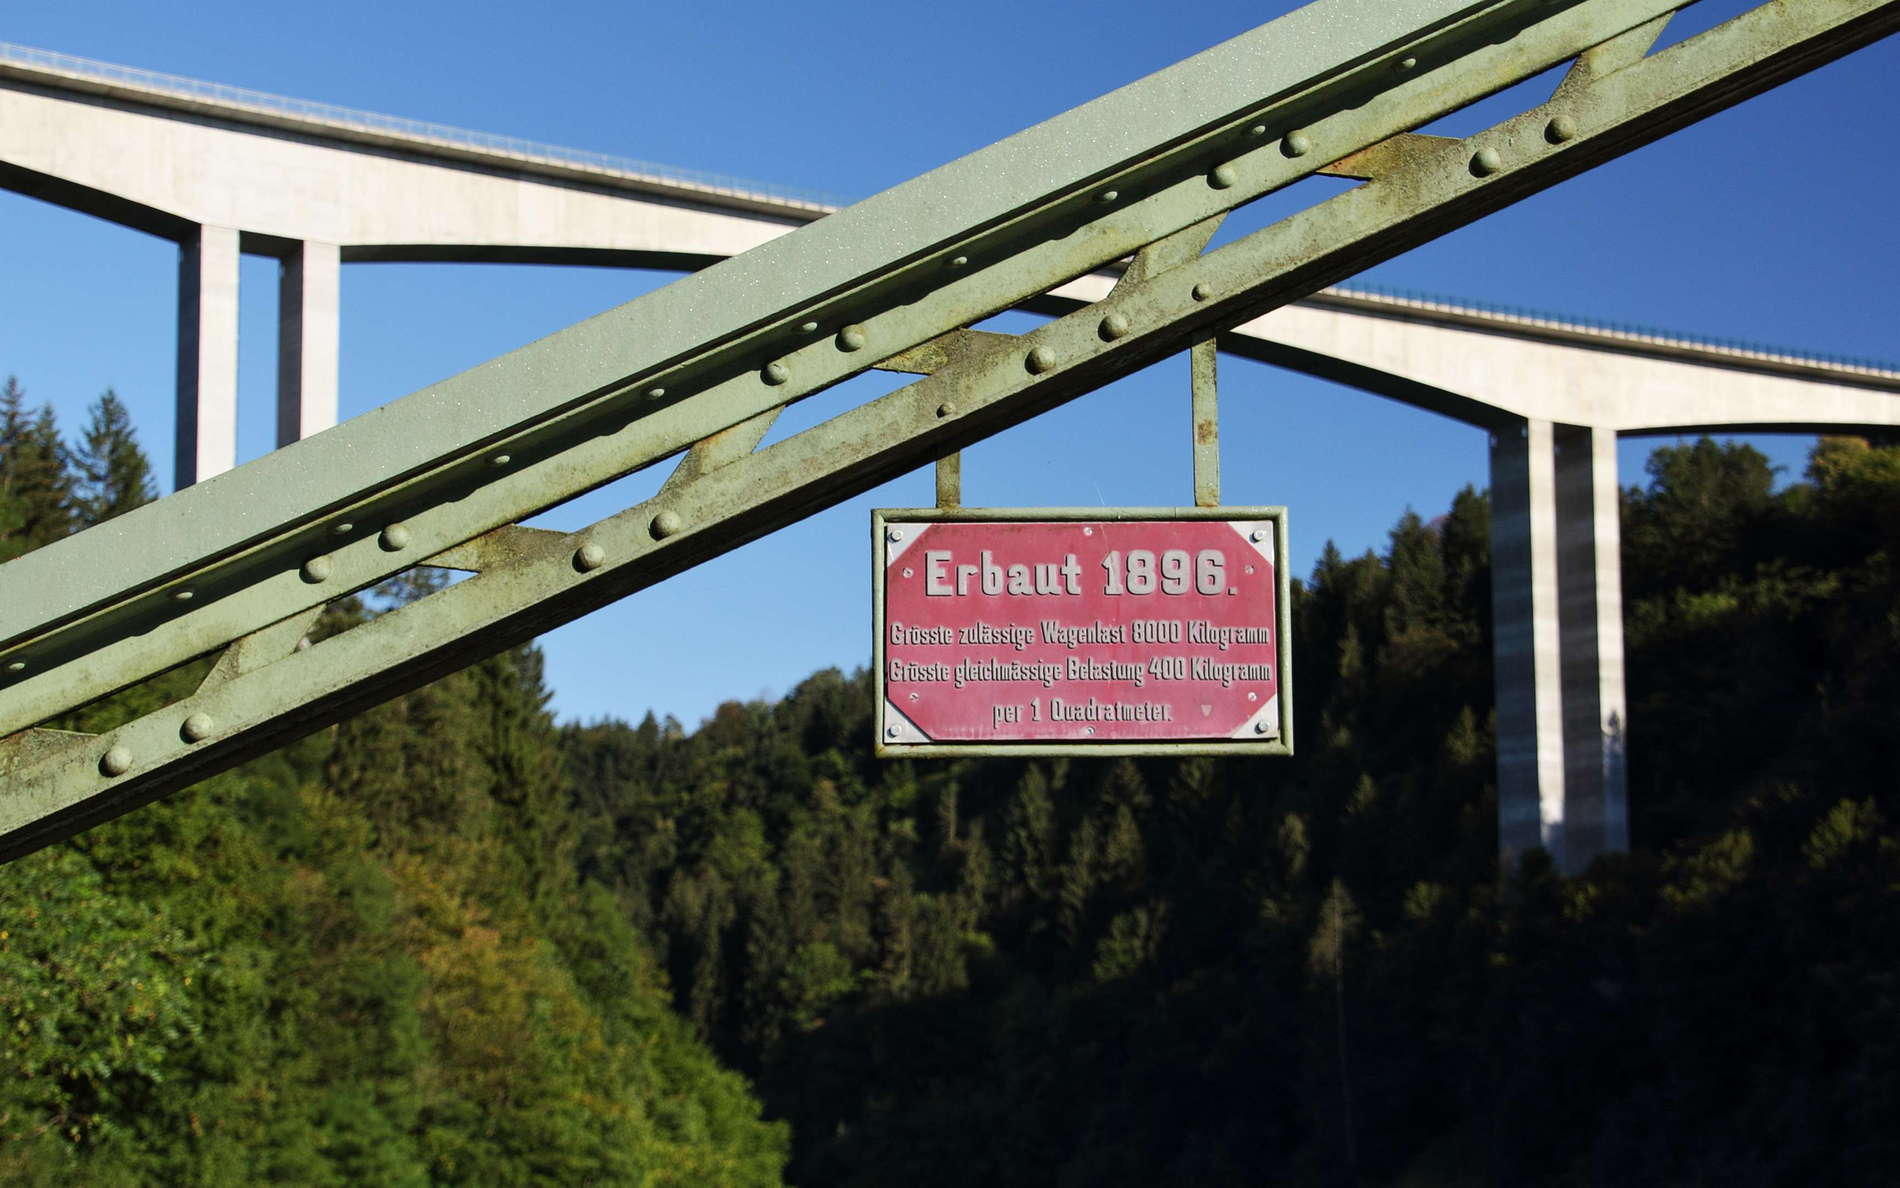 Lippitzbach Bridges